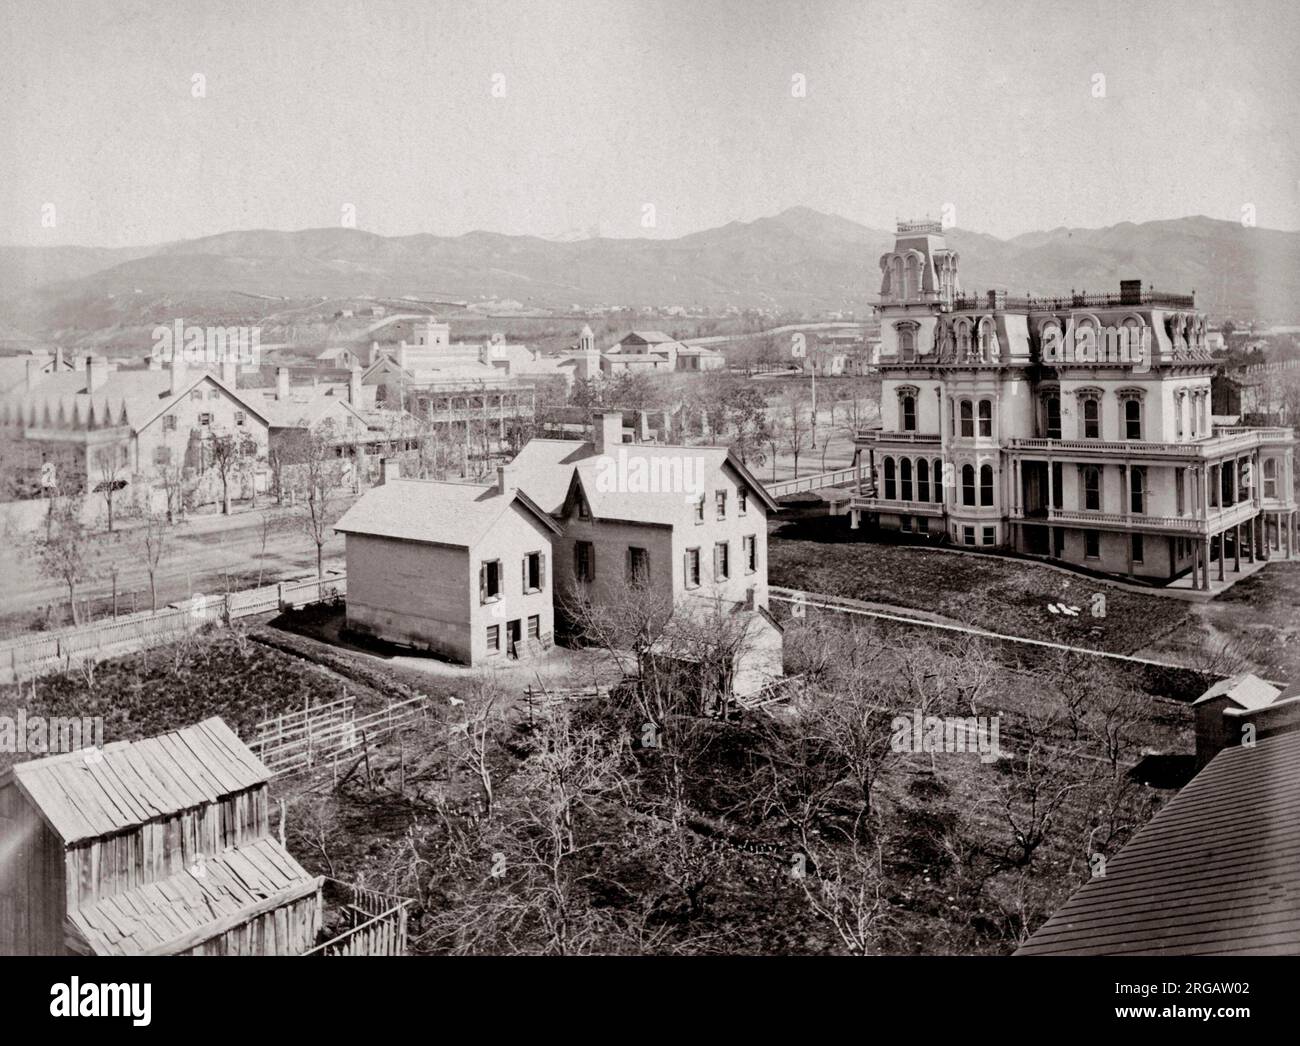 Casas históricas, incluyendo The Beehive, hogar de Brigham Young, Iglesia de los Santos de los Últimos Días, Salt Lake City, Utah, finales del siglo 19th, Mormón. Foto de stock